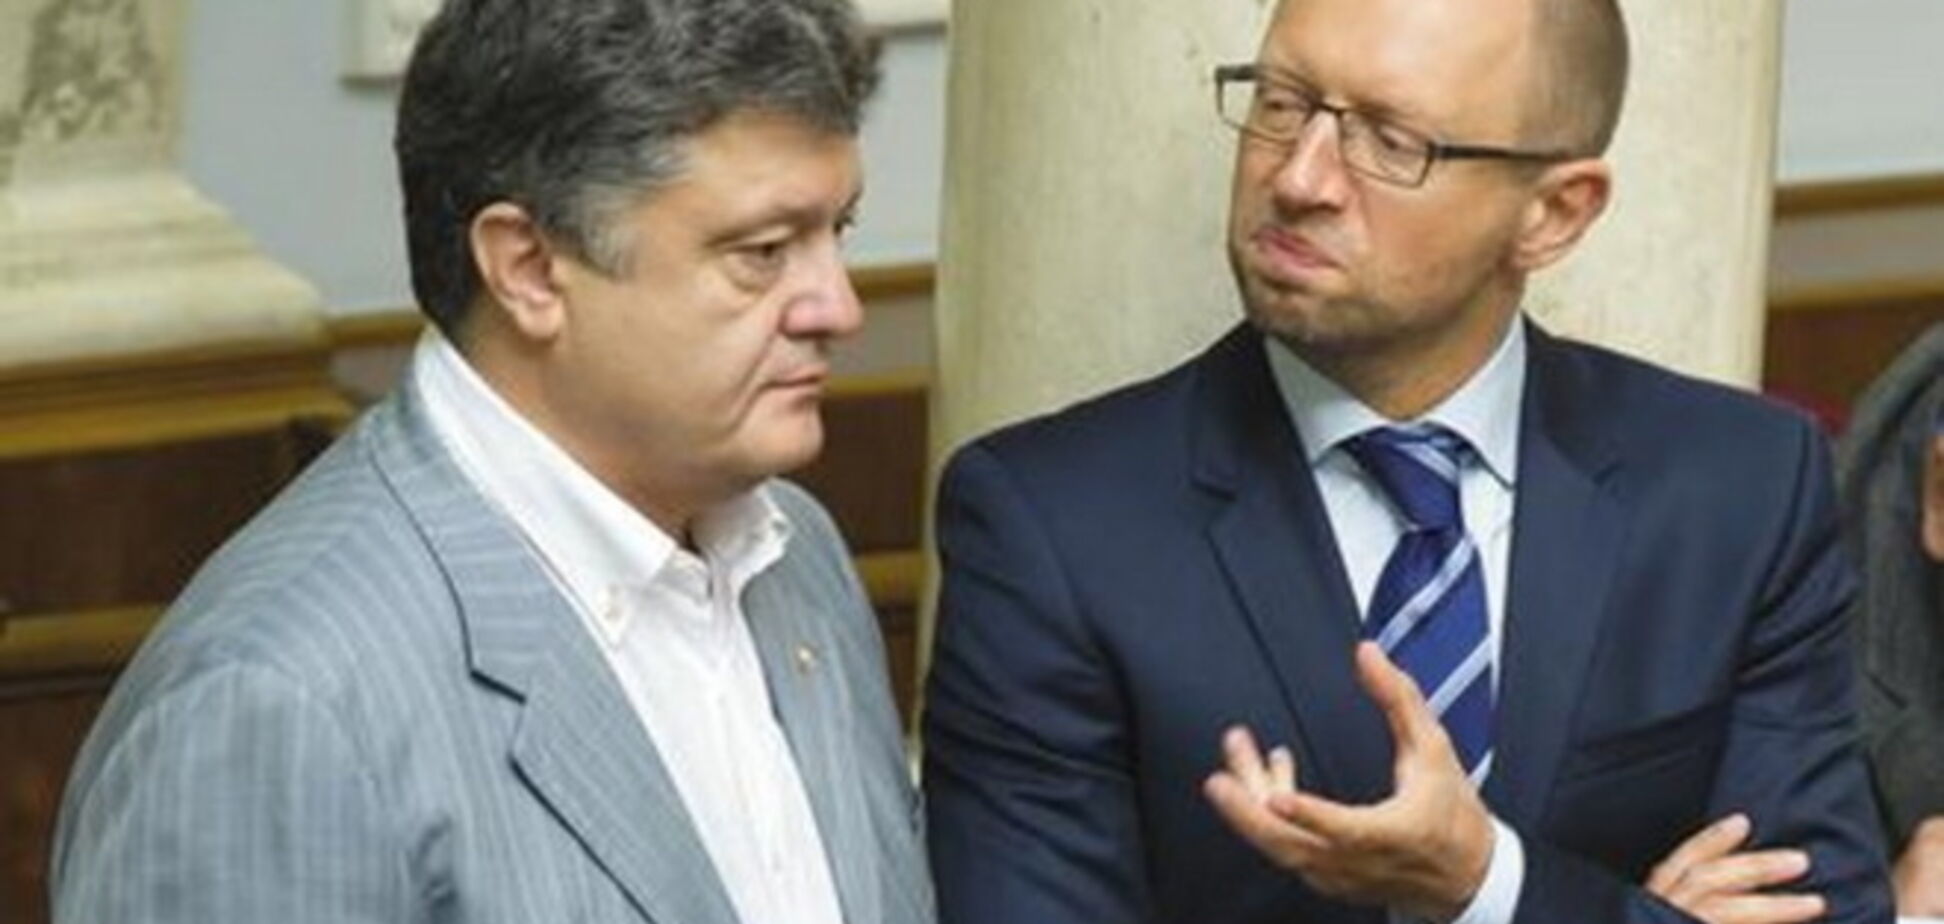 Порошенко и Яценюк срочно собирают в НБУ глав крупнейших банков 